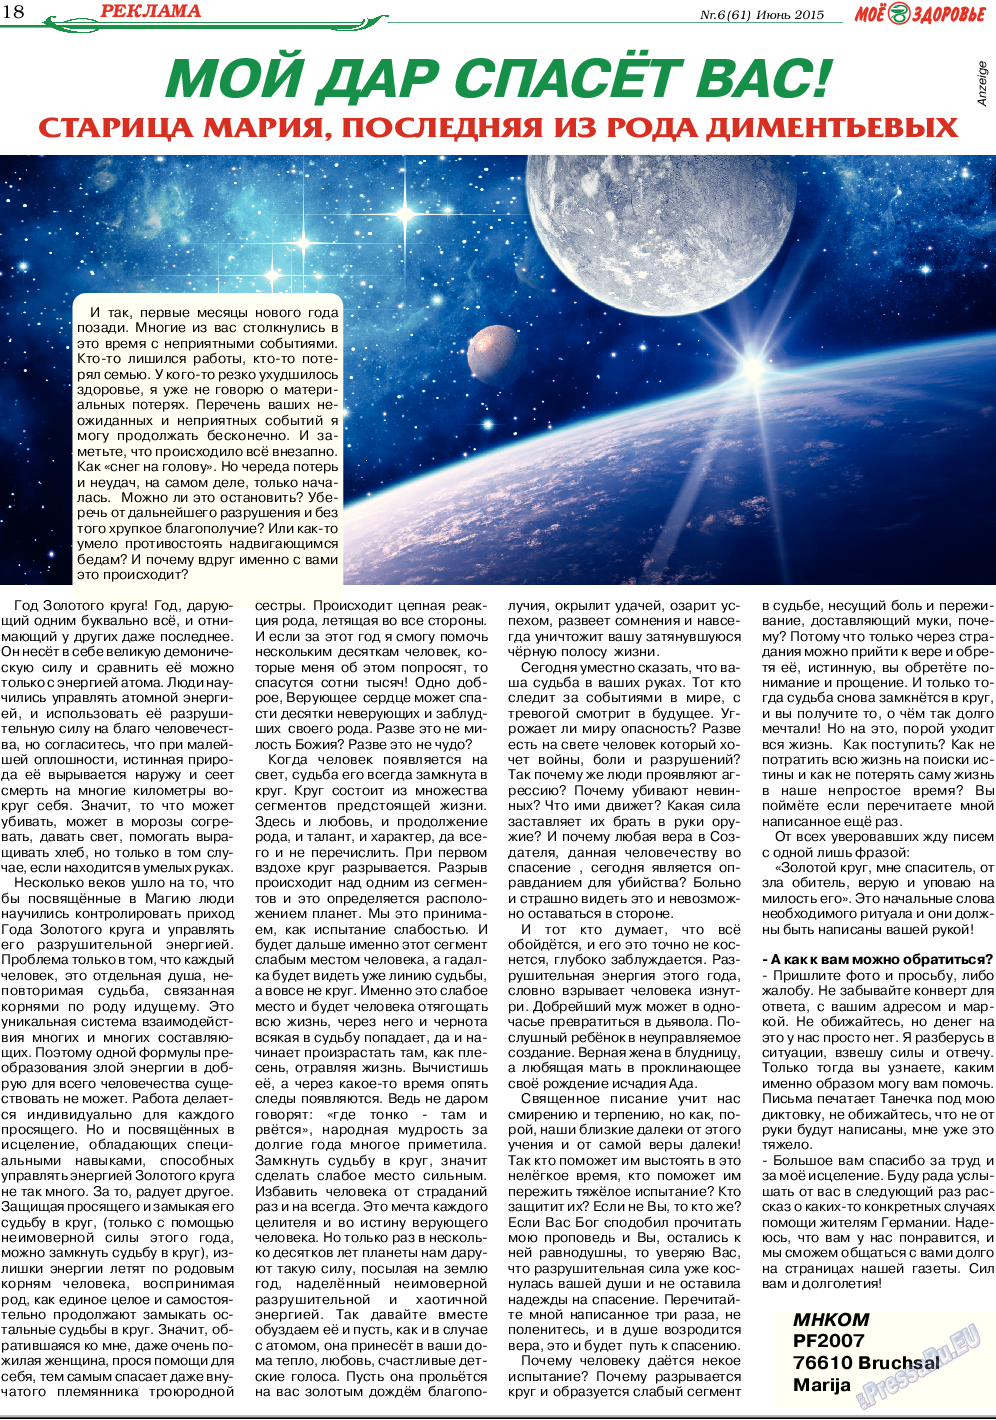 Кругозор, газета. 2015 №6 стр.18